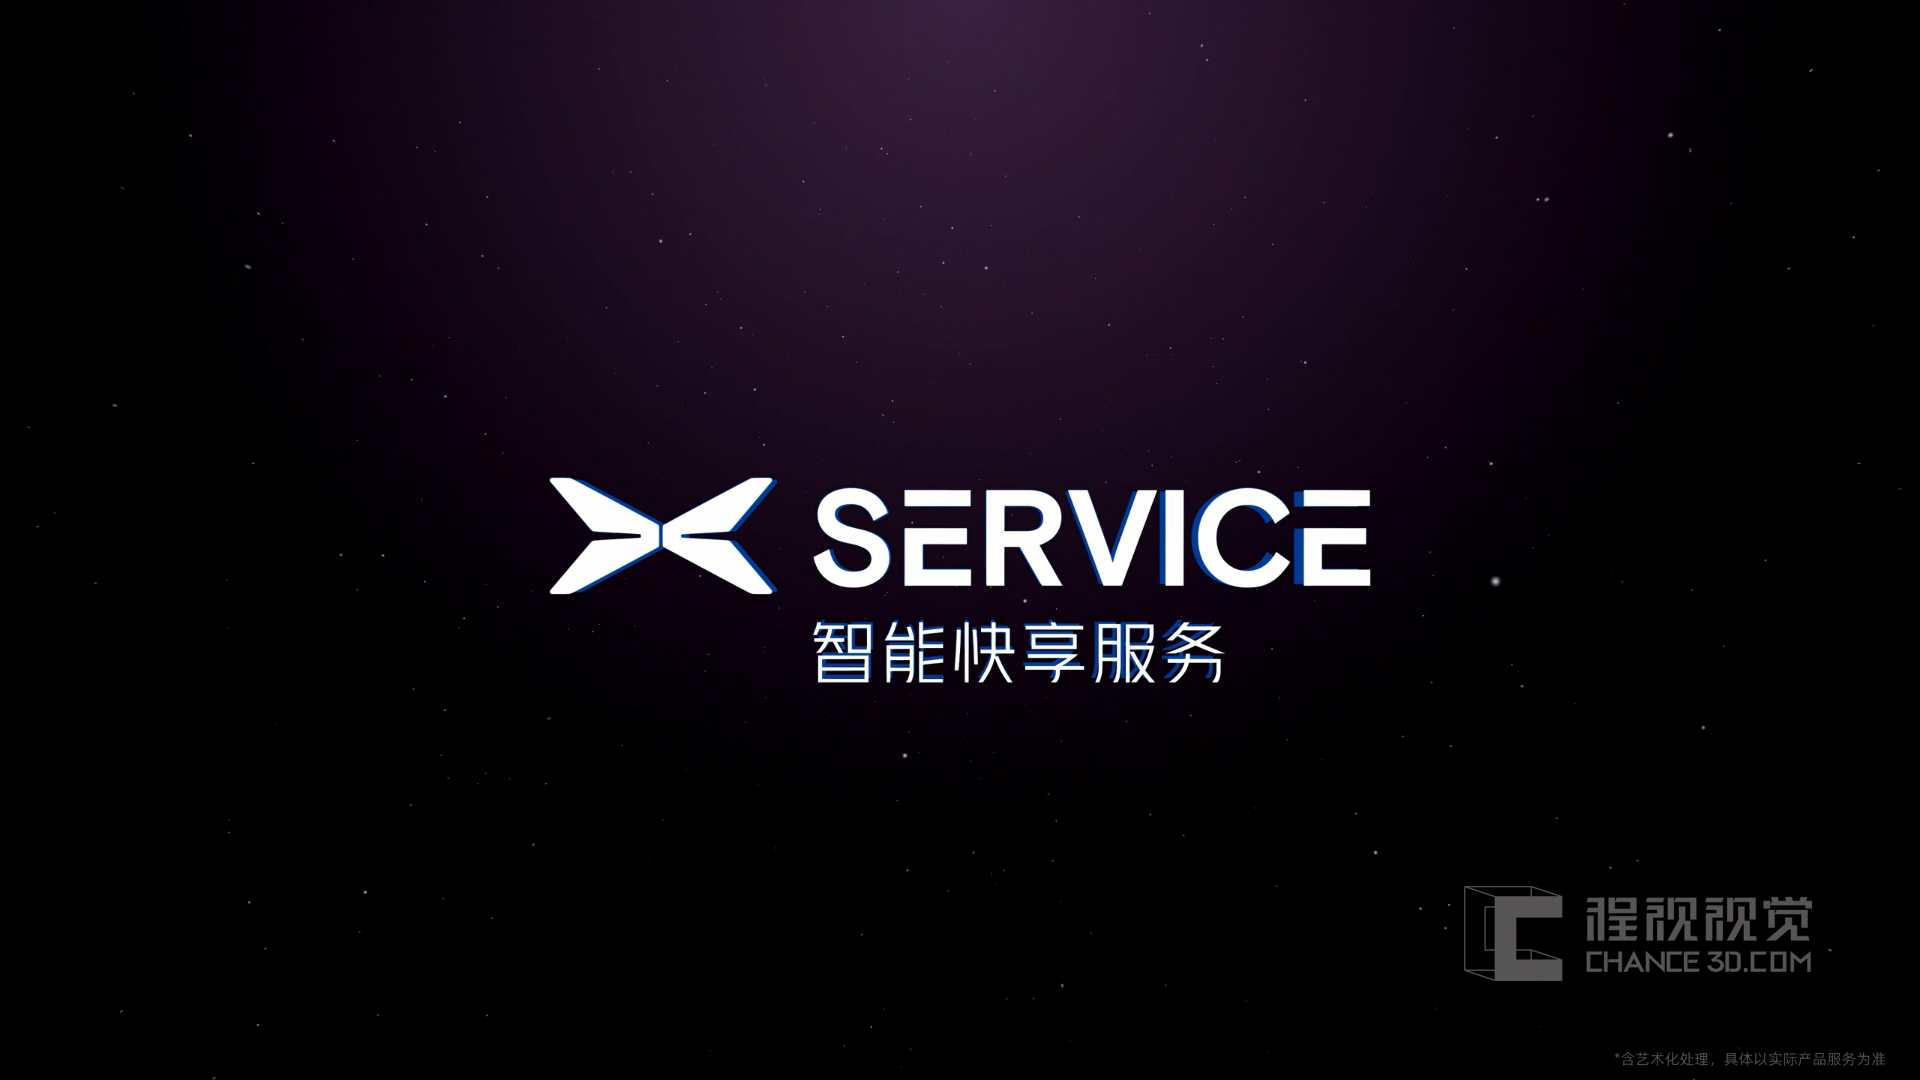 TVC拍摄 | 小鹏X-service服务品牌广告片